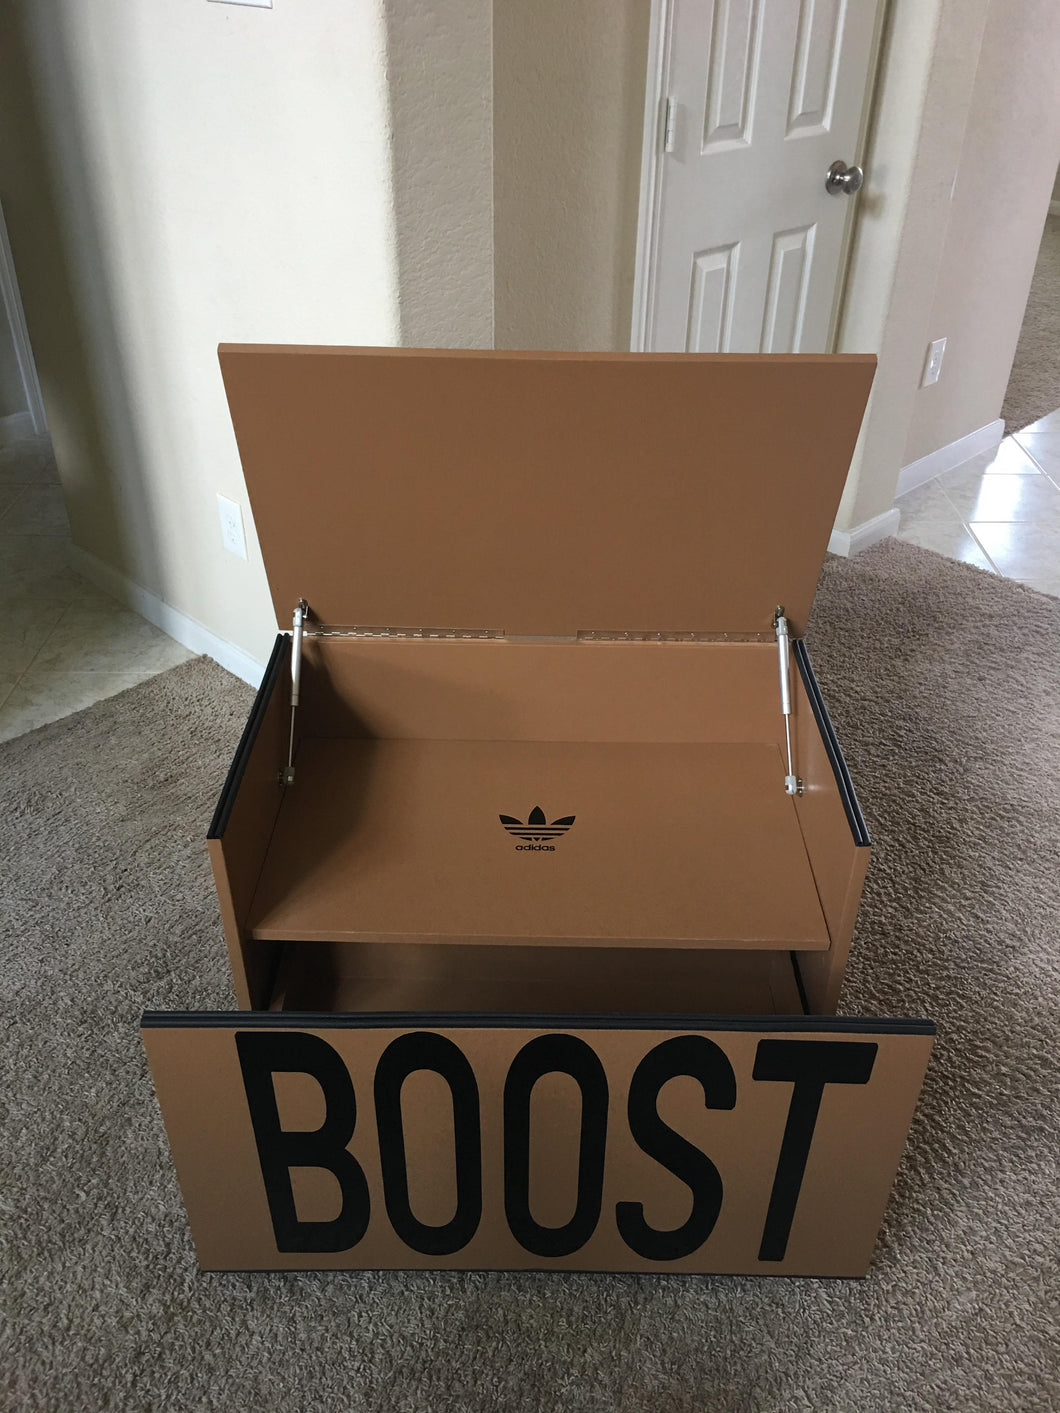 Giant Yeezy Boost 350 Inspired Shoe 